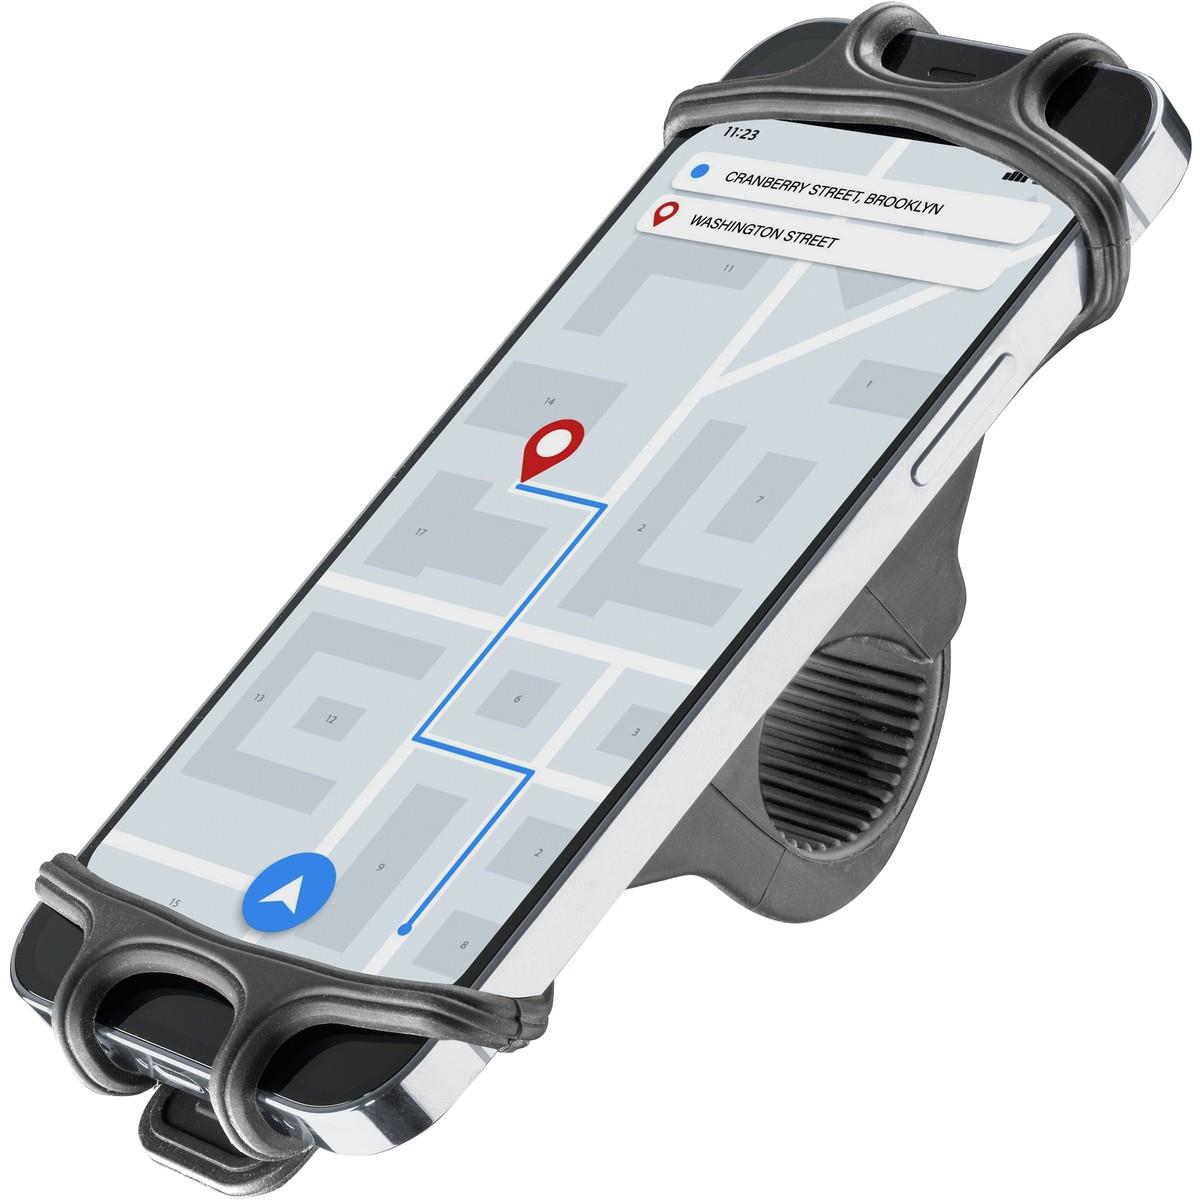 Fahrradhalterung RIDER für Smartphones zwischen 4 und 6,7 Zoll